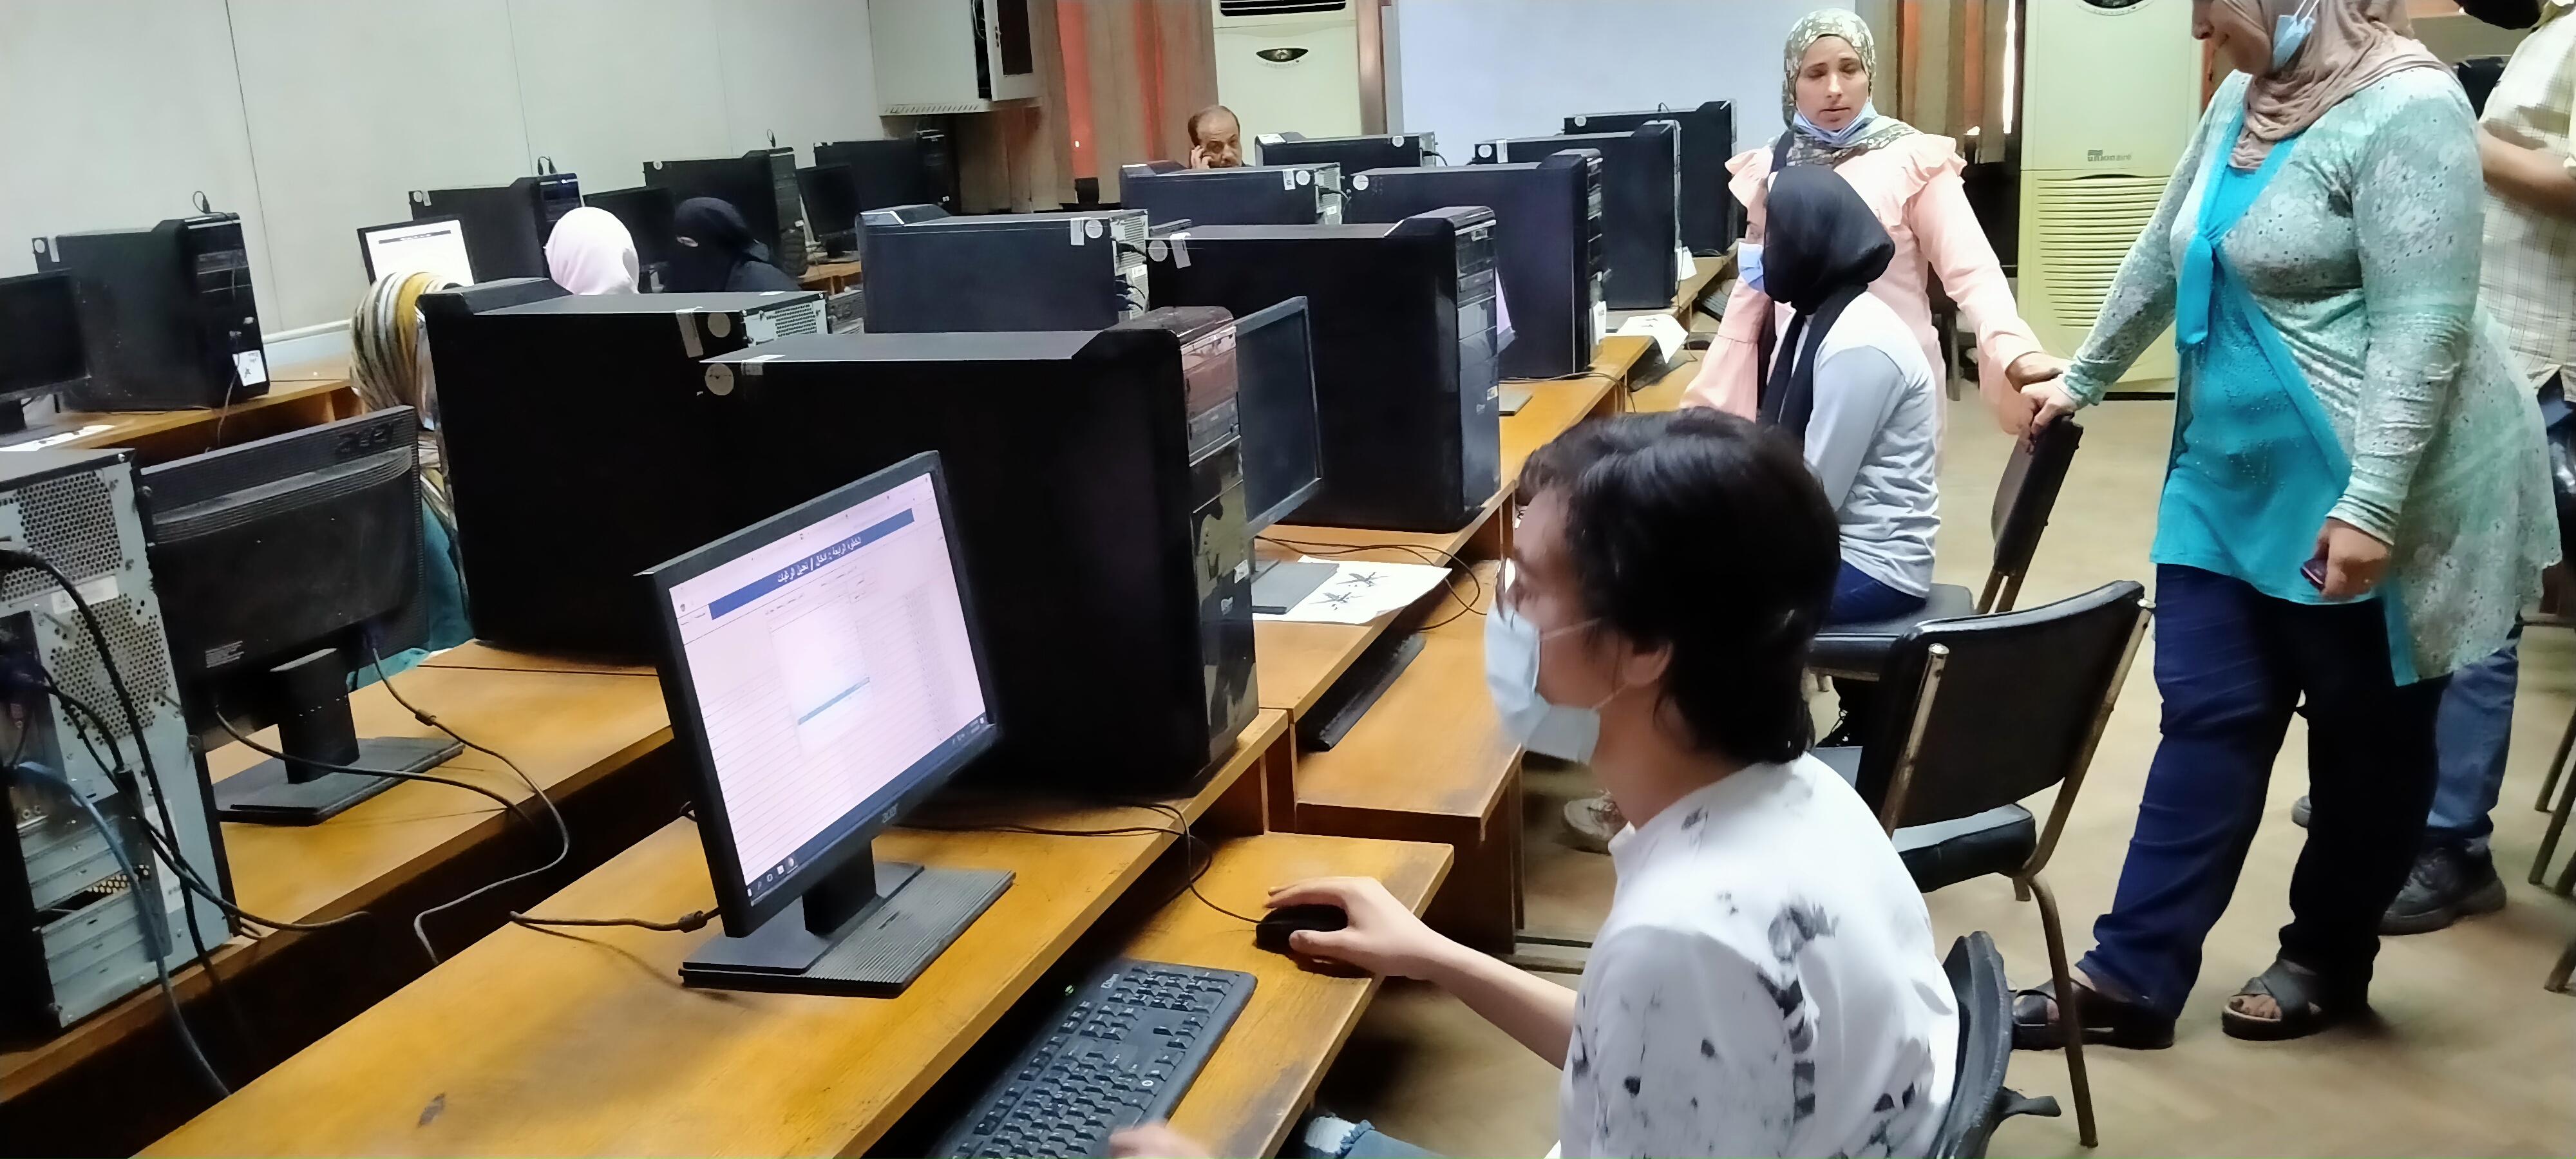 توافد طلاب المرحلة الأولى على معامل تنسيق هندسة القاهرة لتسجيل الرغبات  (2)